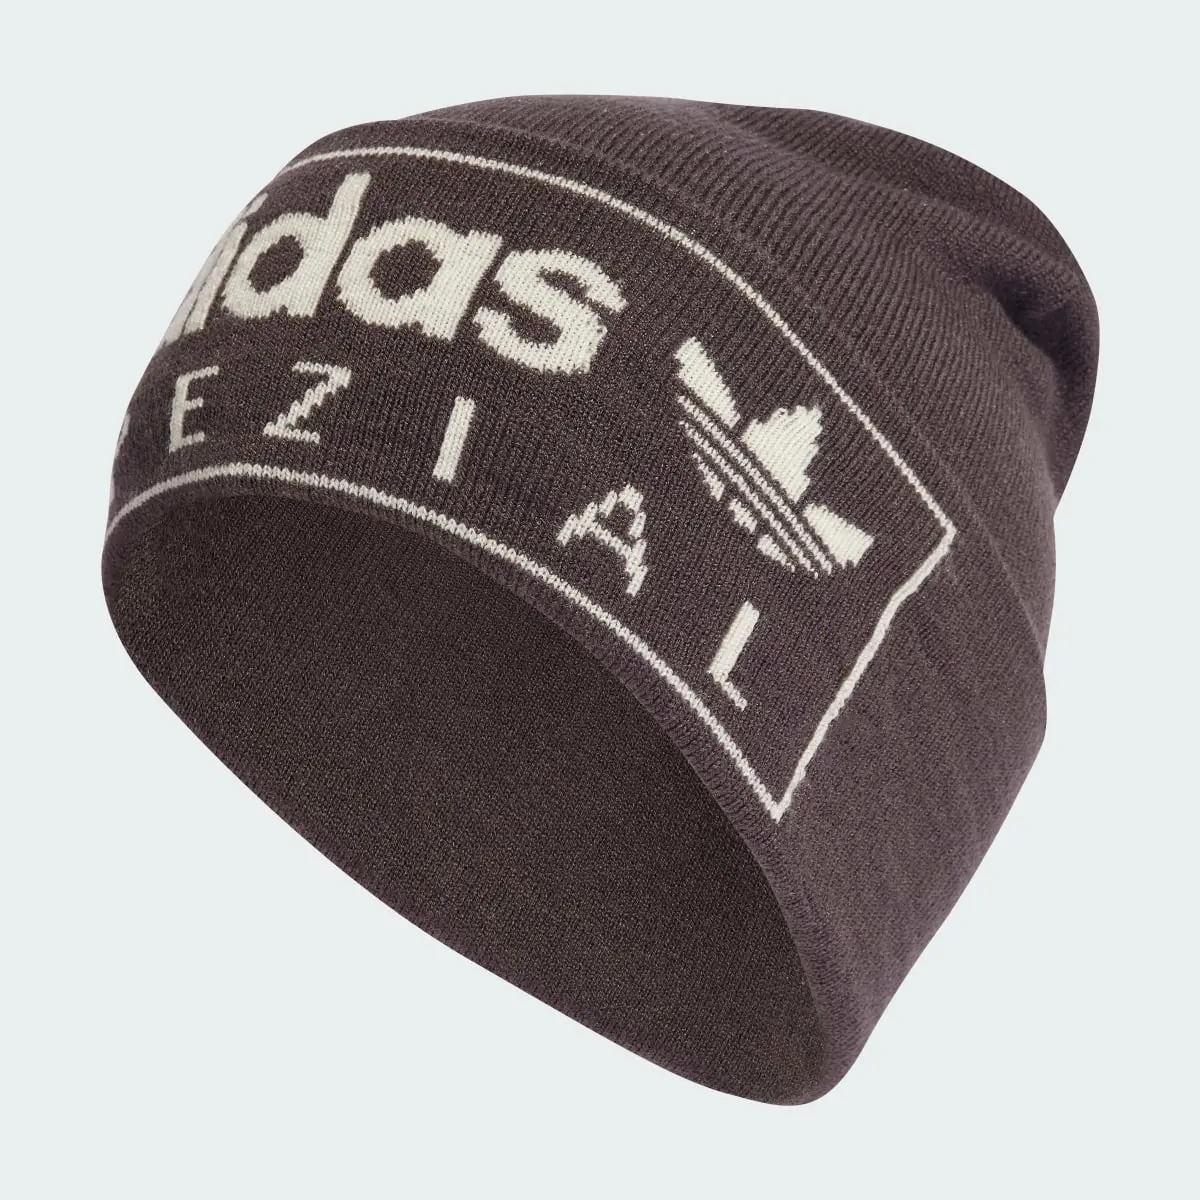 Adidas Cappello Spezial. 2